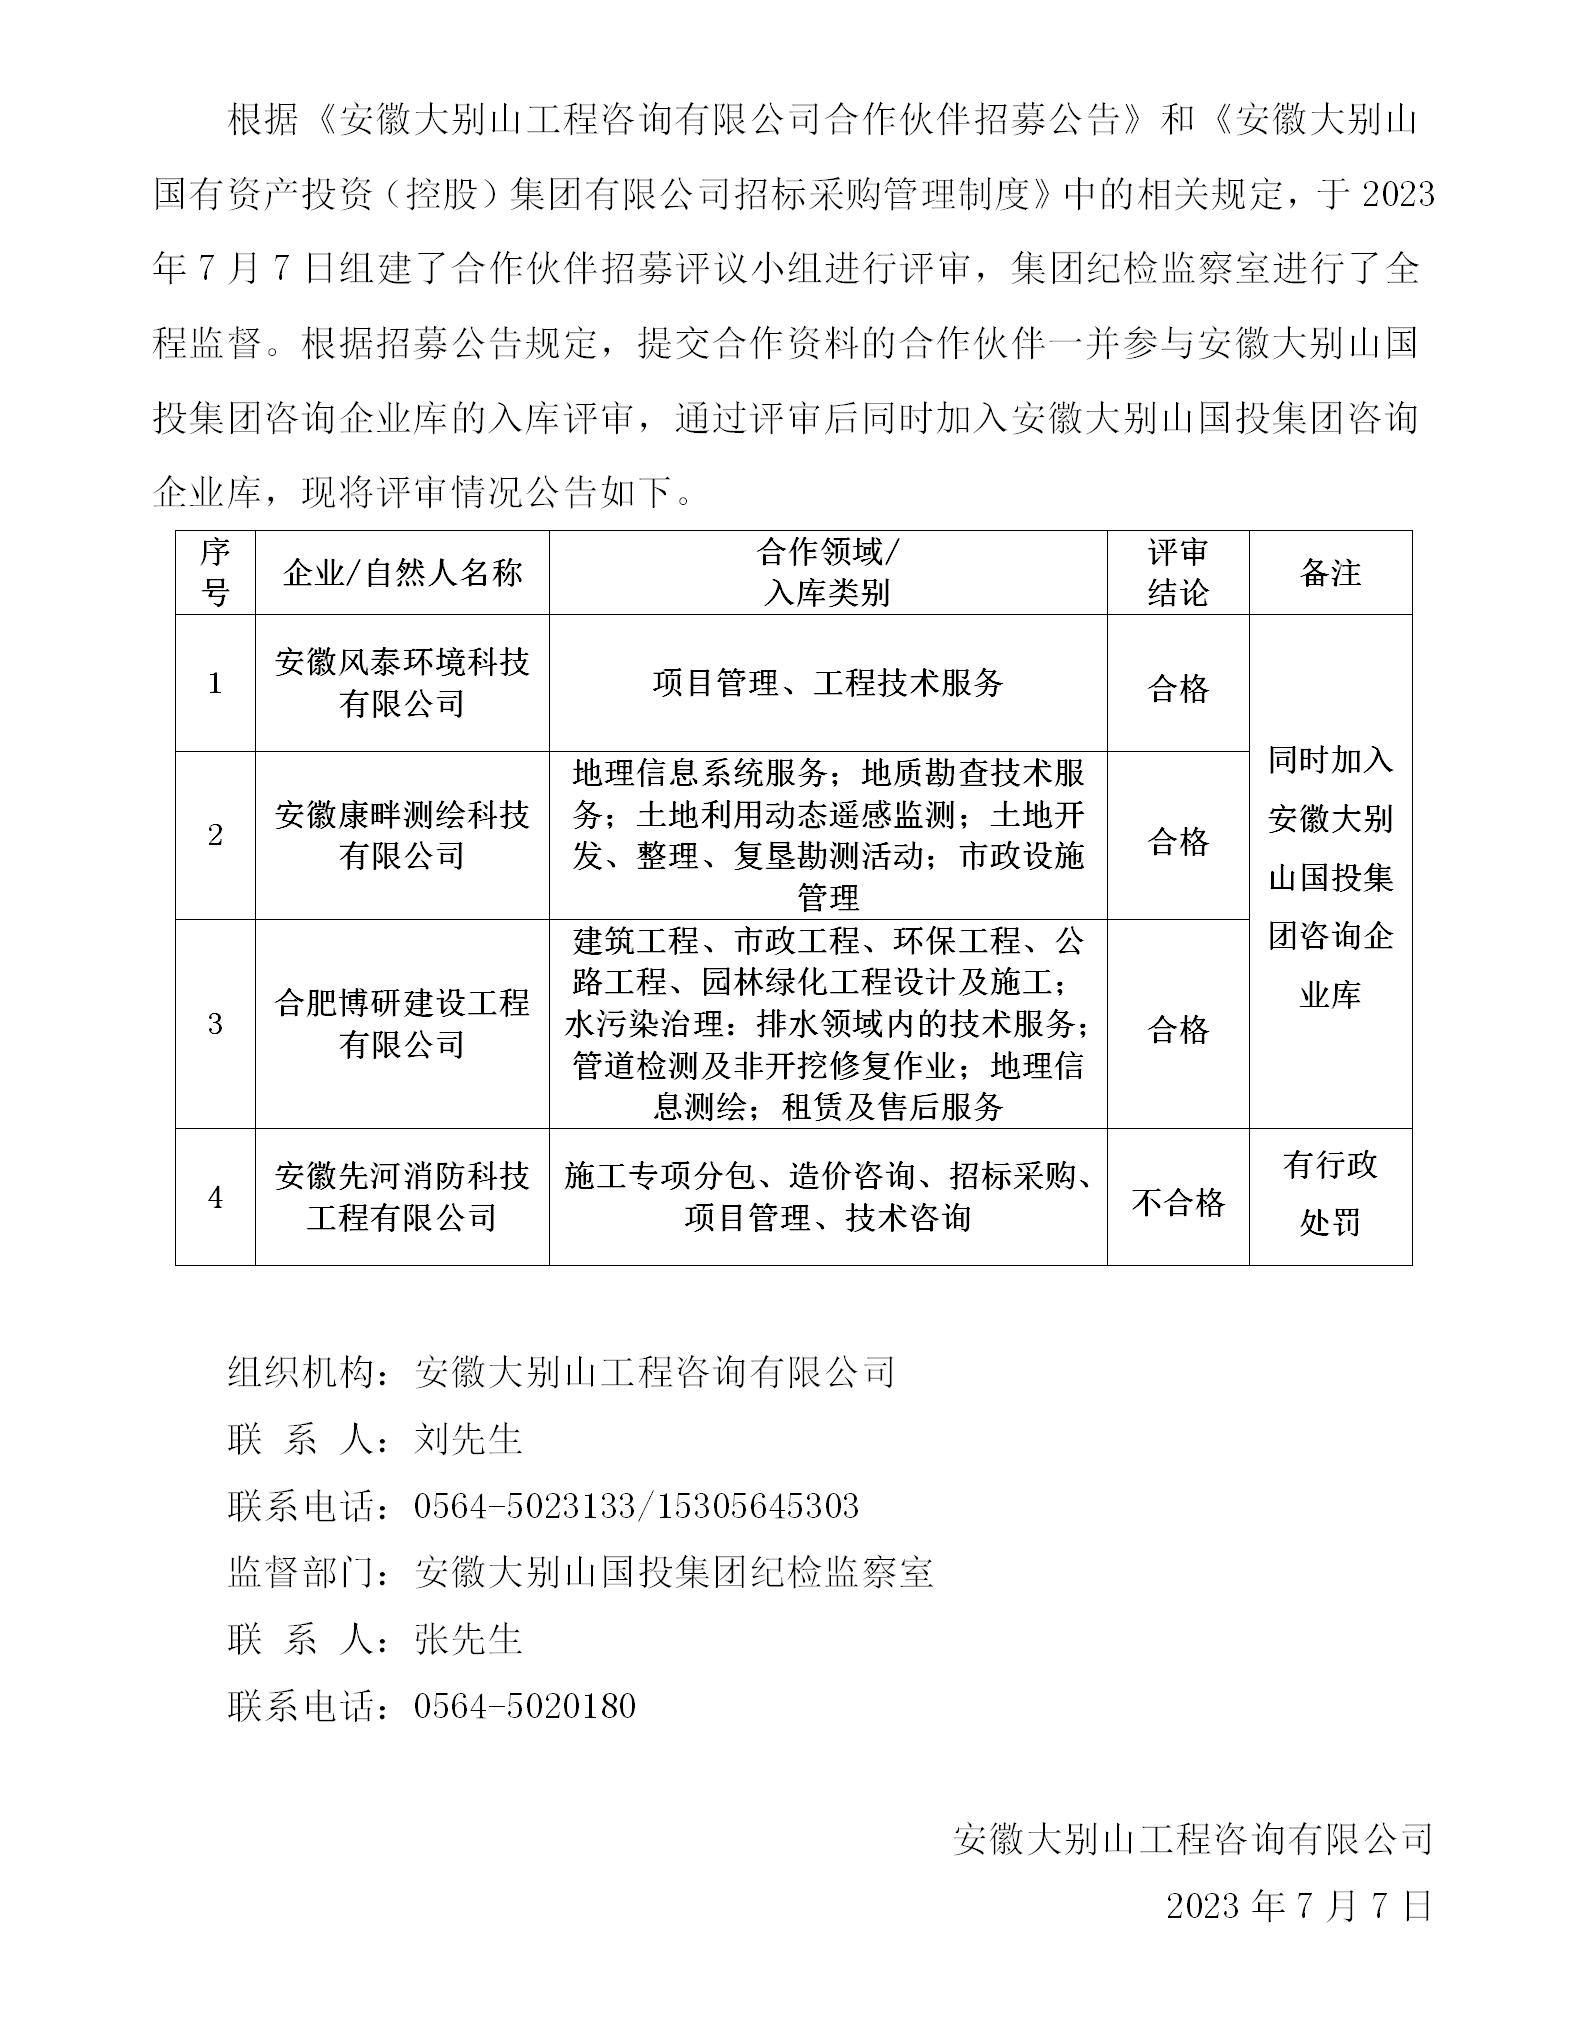 安徽大別山工程咨詢有限公司合作伙伴招募結果公告(十三)